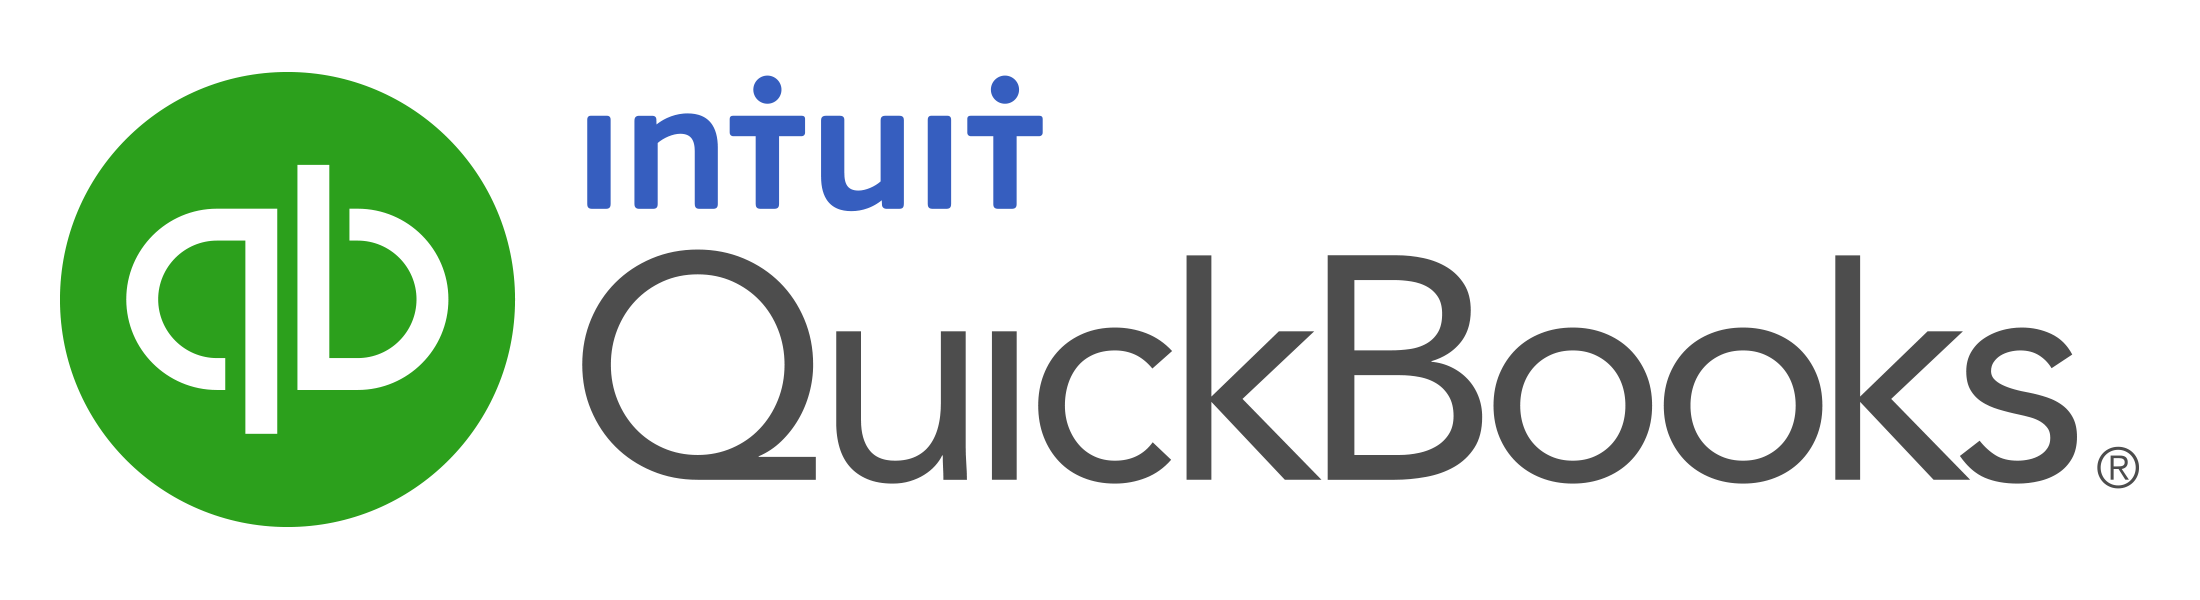 quickbooks integration, intuit quickbooks